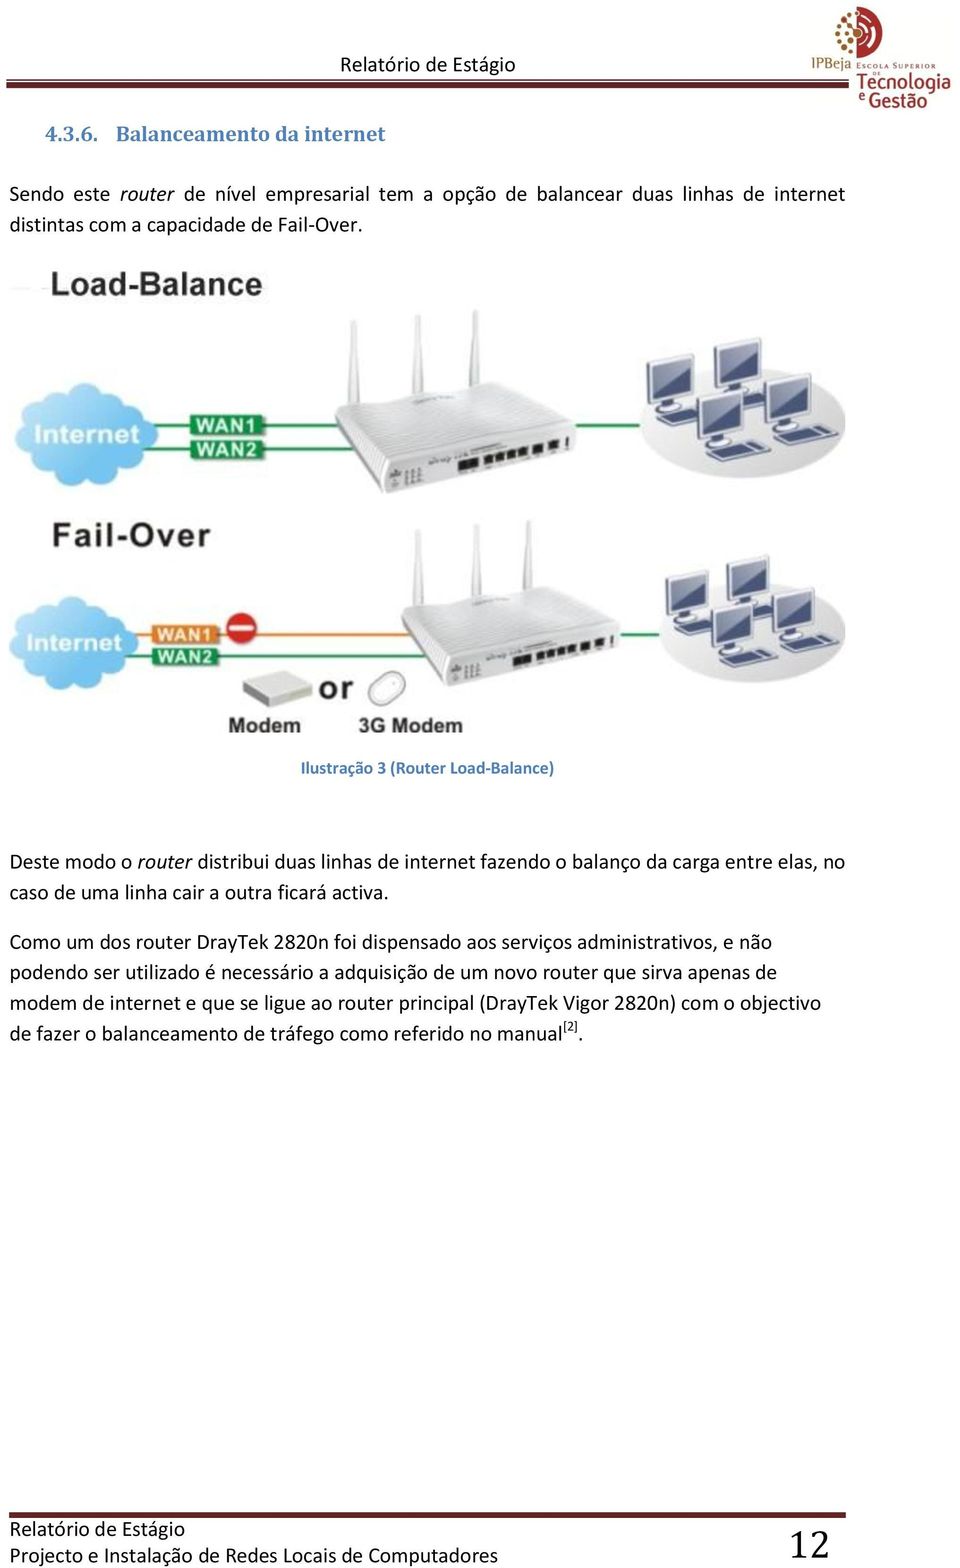 Como um dos router DrayTek 2820n foi dispensado aos serviços administrativos, e não podendo ser utilizado é necessário a adquisição de um novo router que sirva apenas de modem de